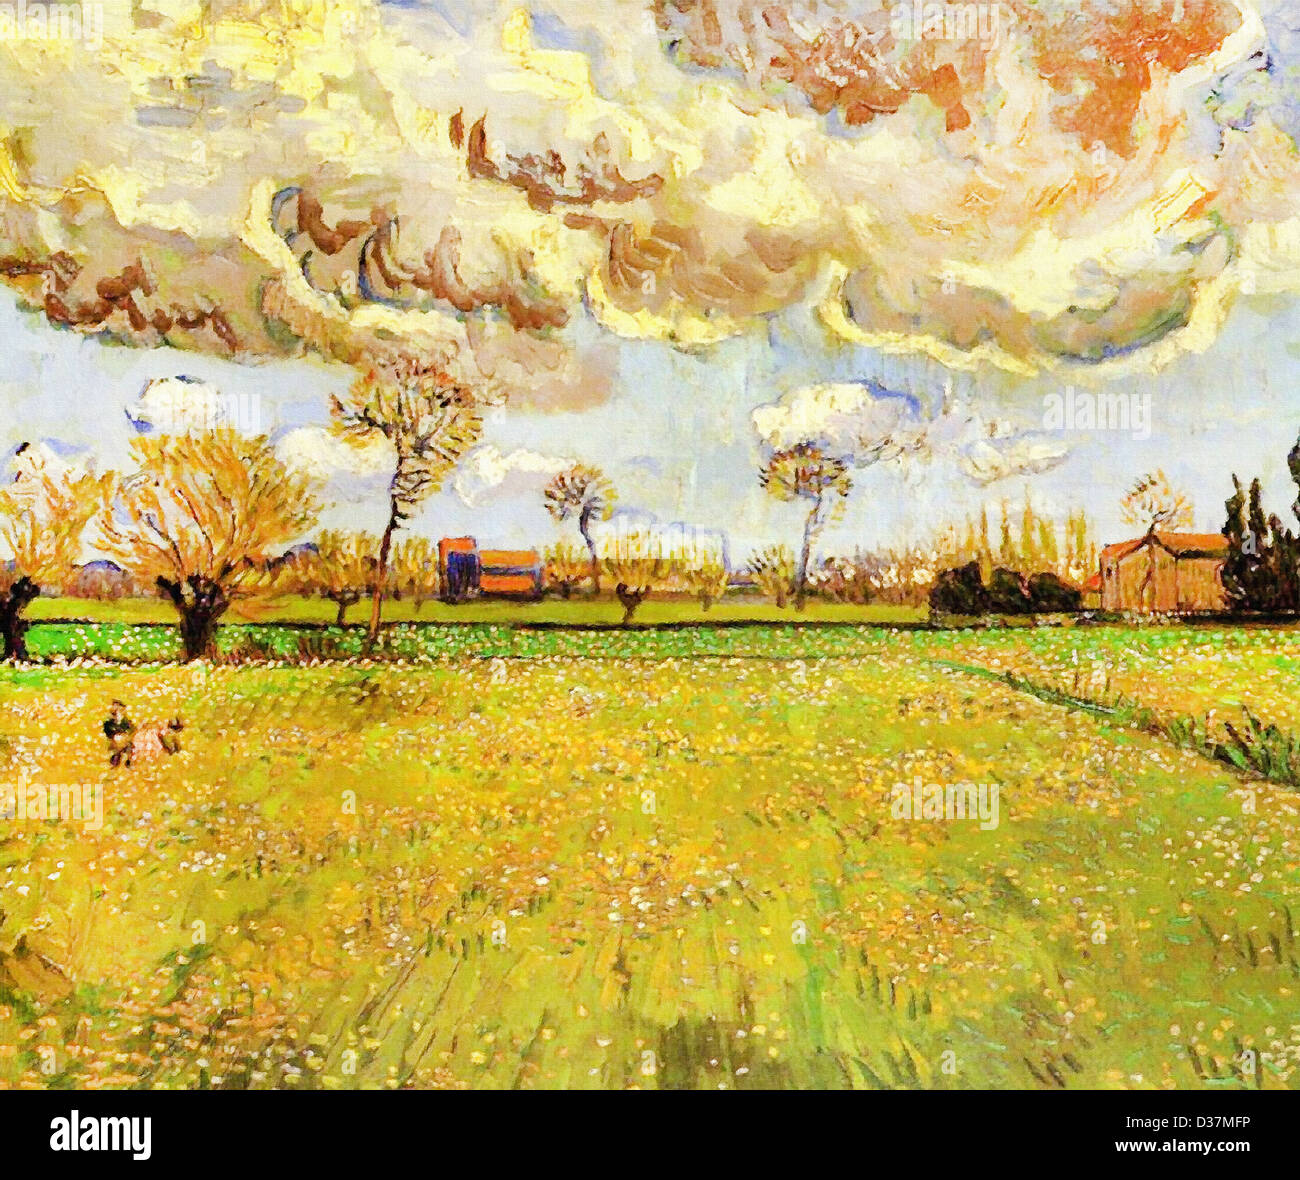 Vincent van Gogh, paysage sous un ciel d'orage. 1888. Le postimpressionnisme. Huile sur toile. Fondation Socindec, Vaduz, Liechtenstein Banque D'Images